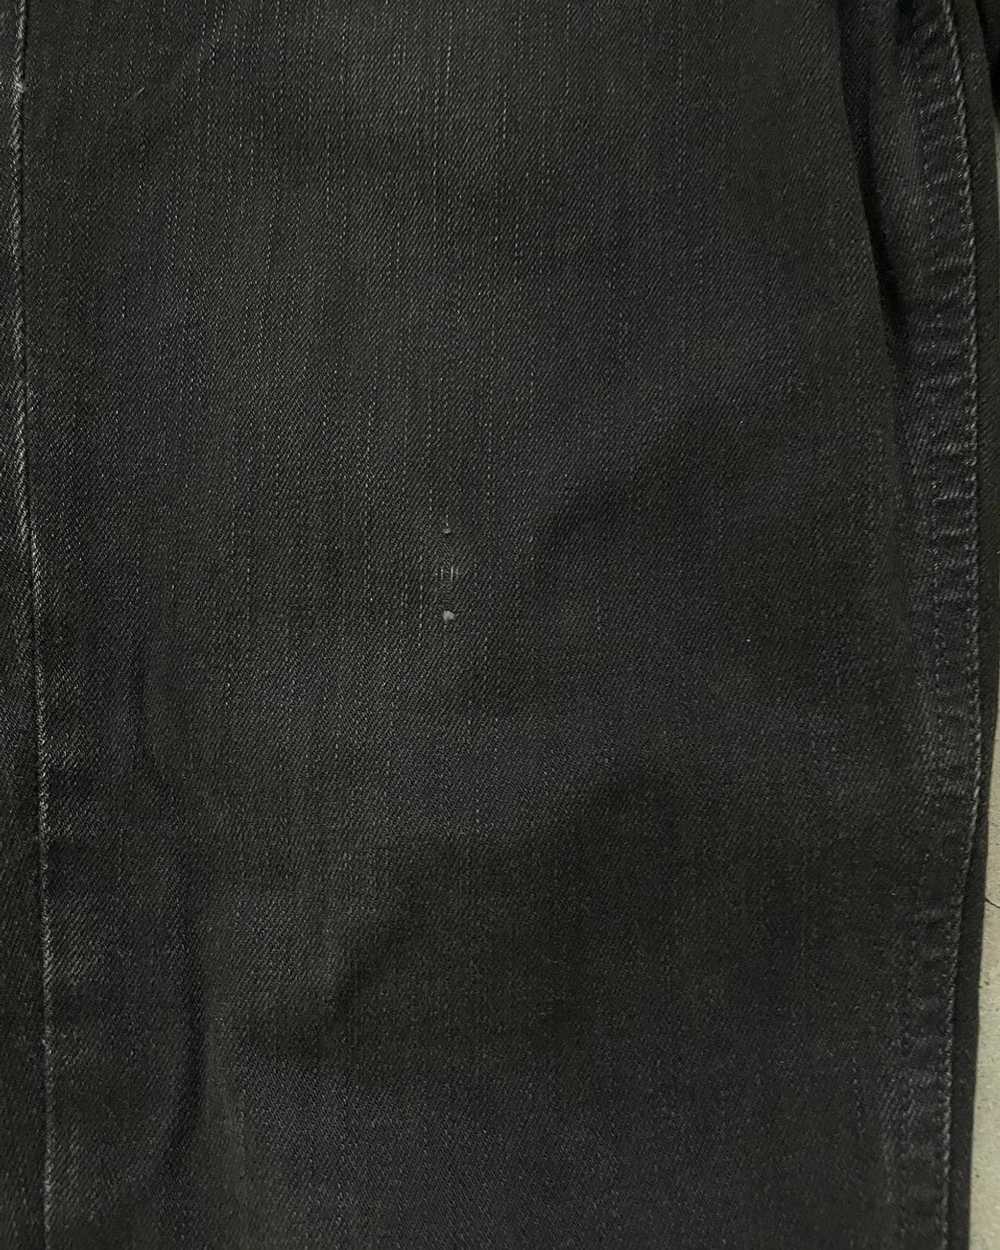 Nudie Jeans NUDIE JEANS LEAN DEAN BLACK JEANS - image 3